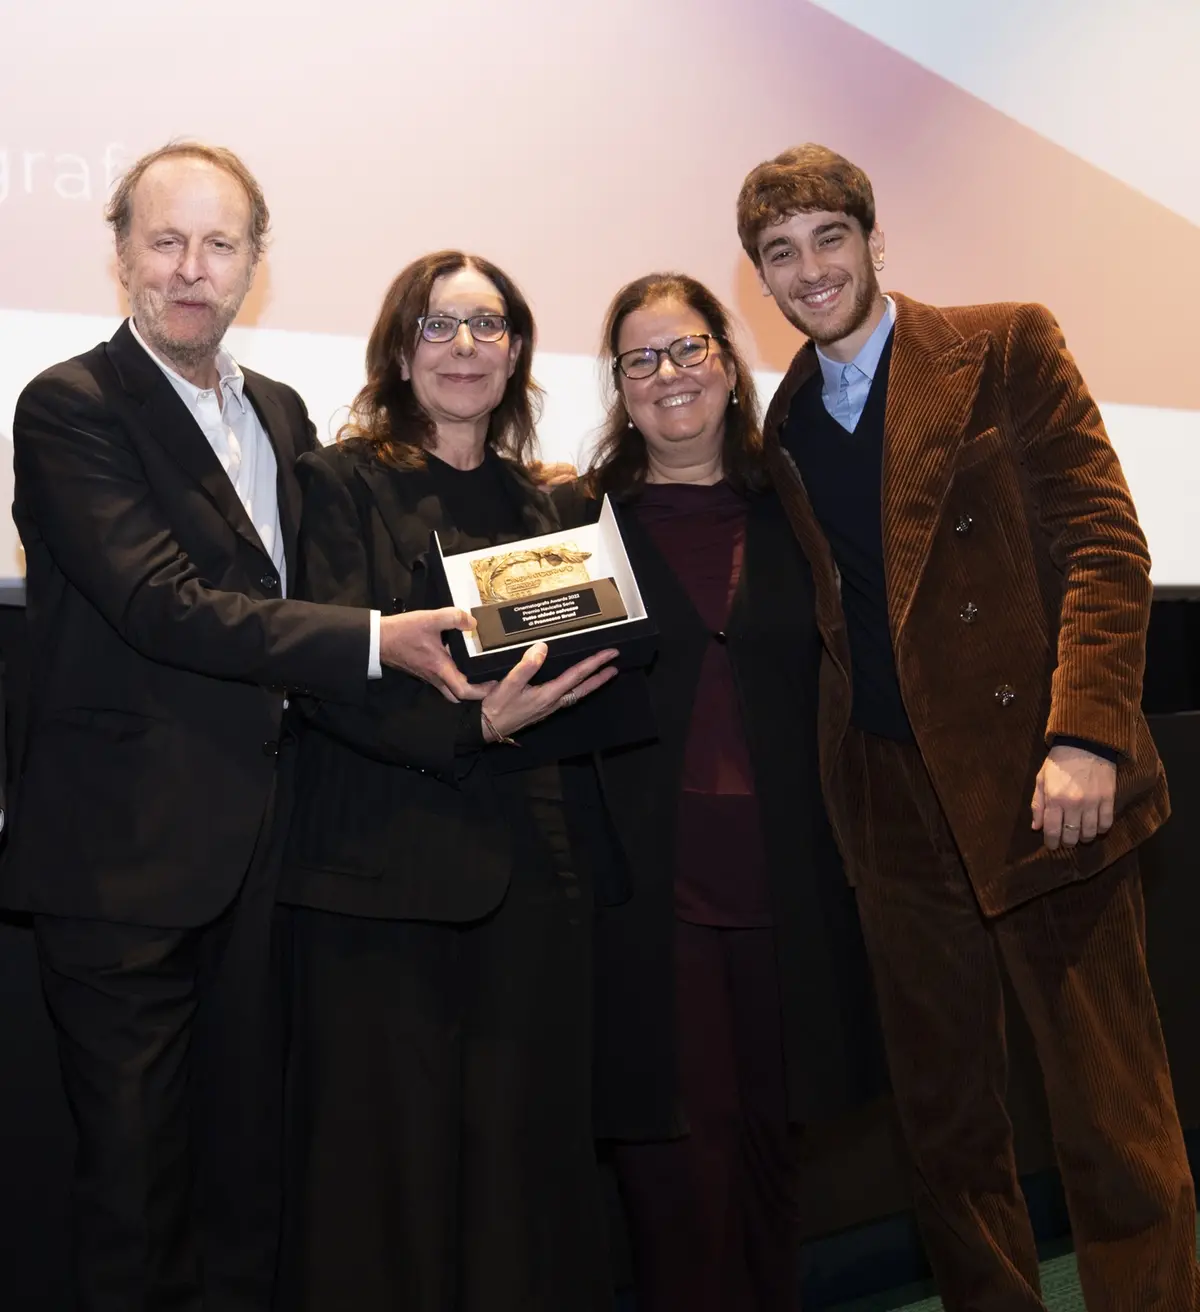 Francesco Bruni, Raffaella Lebboroni, Tinni Andreatta e Federico Cesari premiati con il Cinematografo Award per Tutto chiede salvezza (foto di Karen Di Paola)